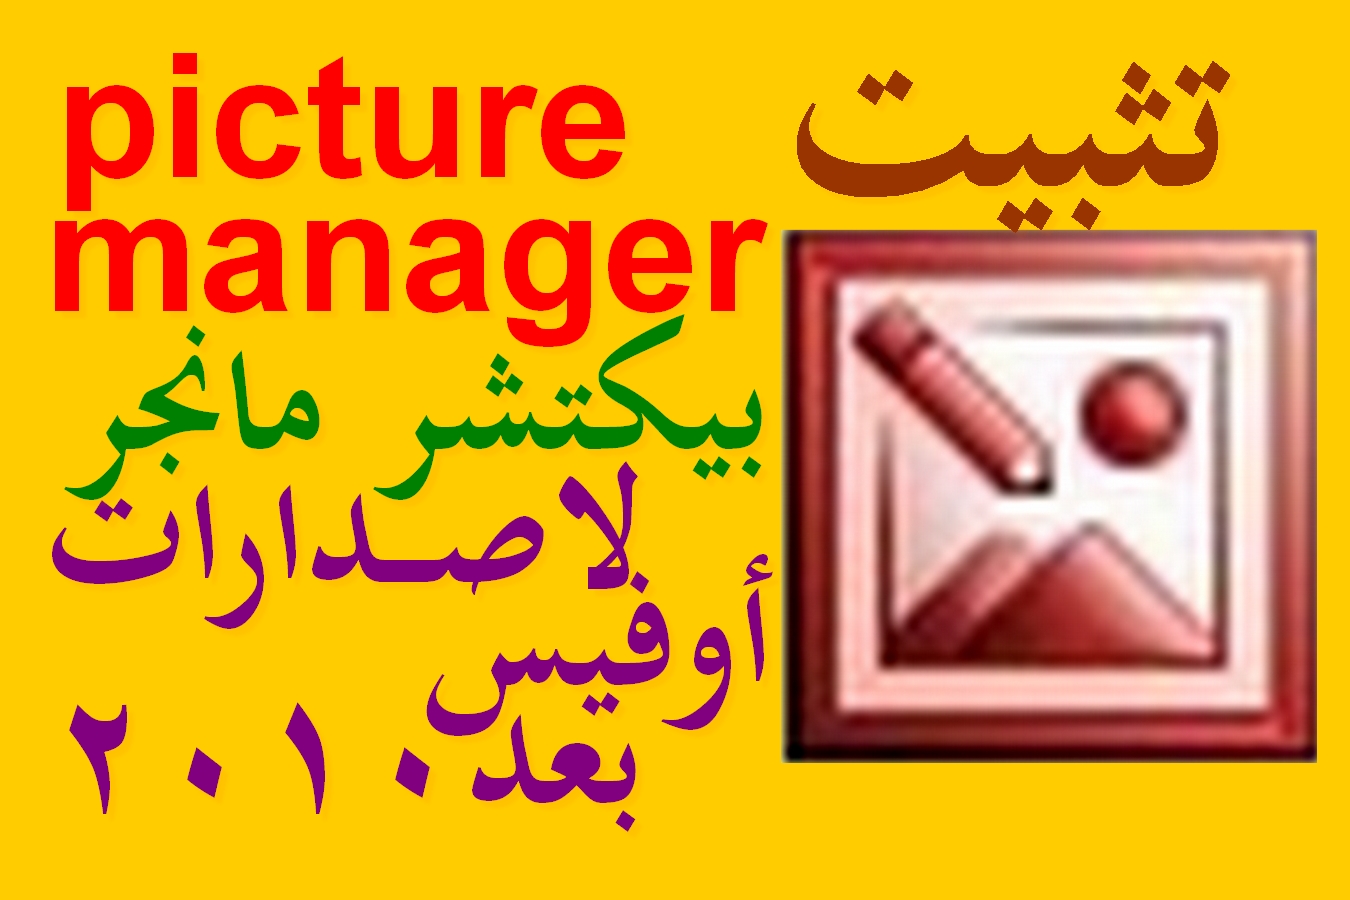 تثبيت برنامج Microsoft Office Picture Manager في إصدارات الأوفيس بعد النسخة 2010